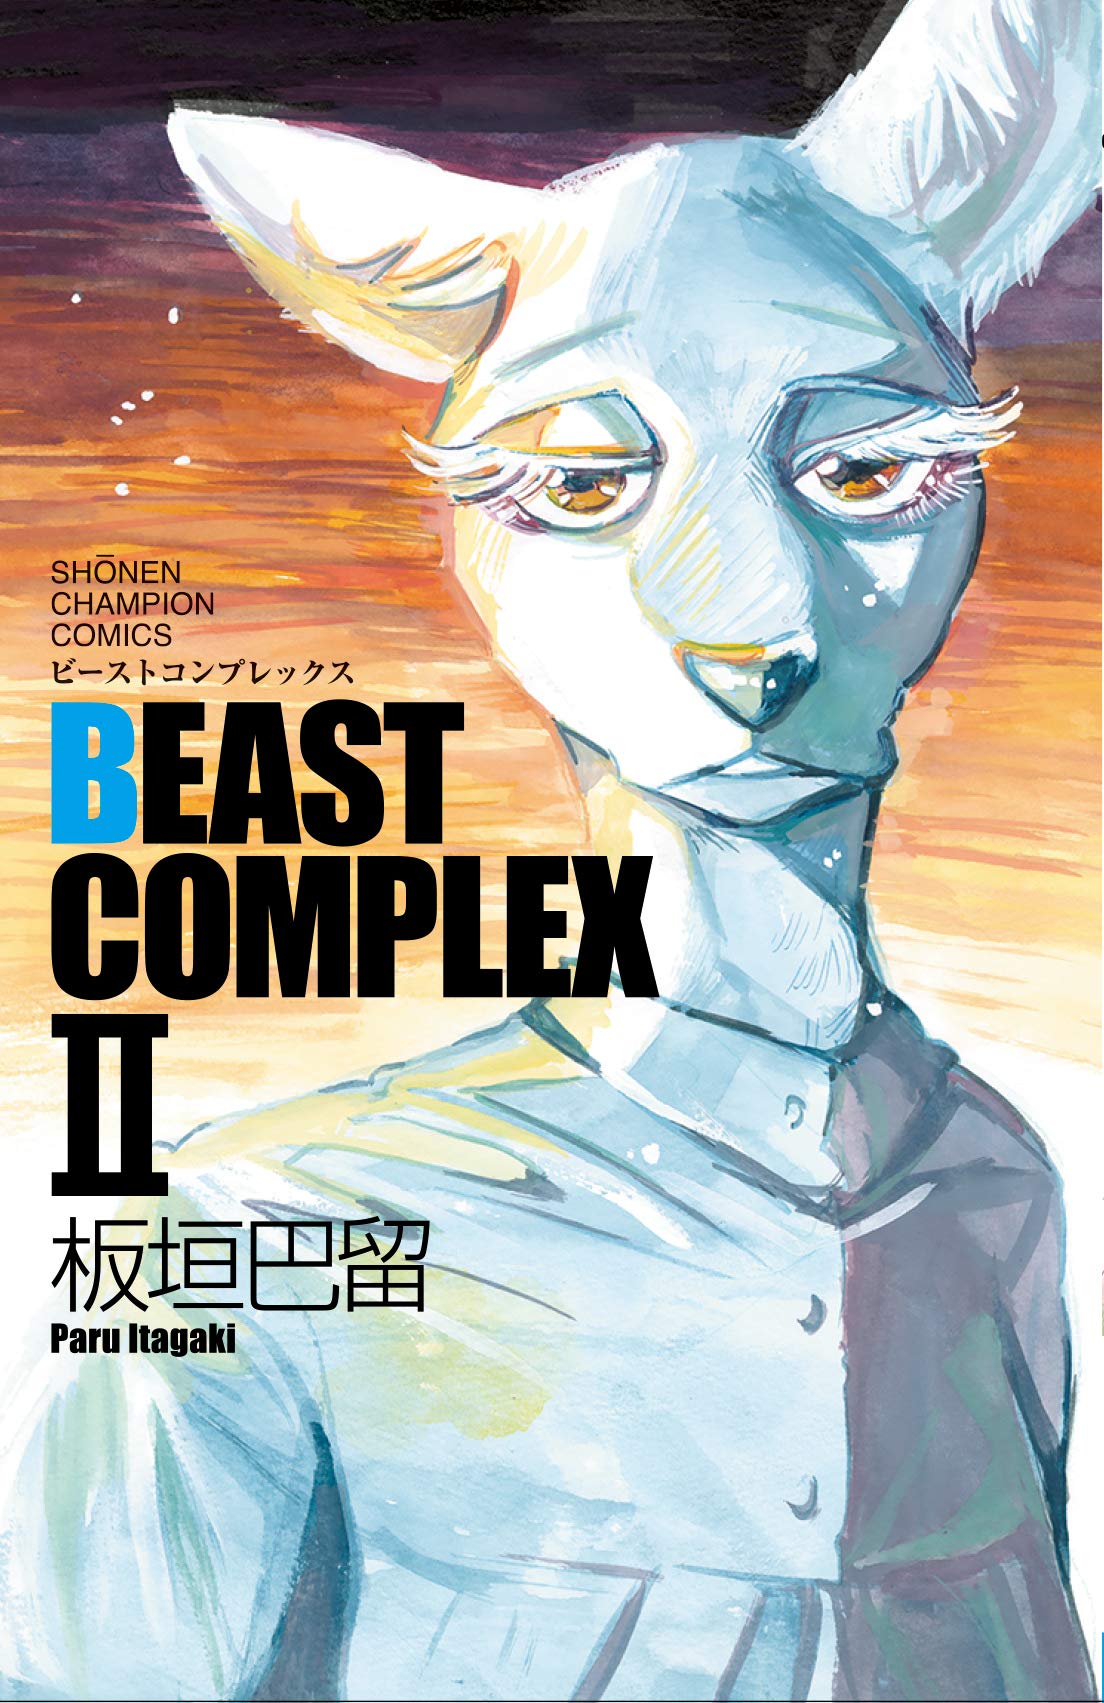 板垣巴留「BEAST COMPLEX II」2021年4月8日発売!